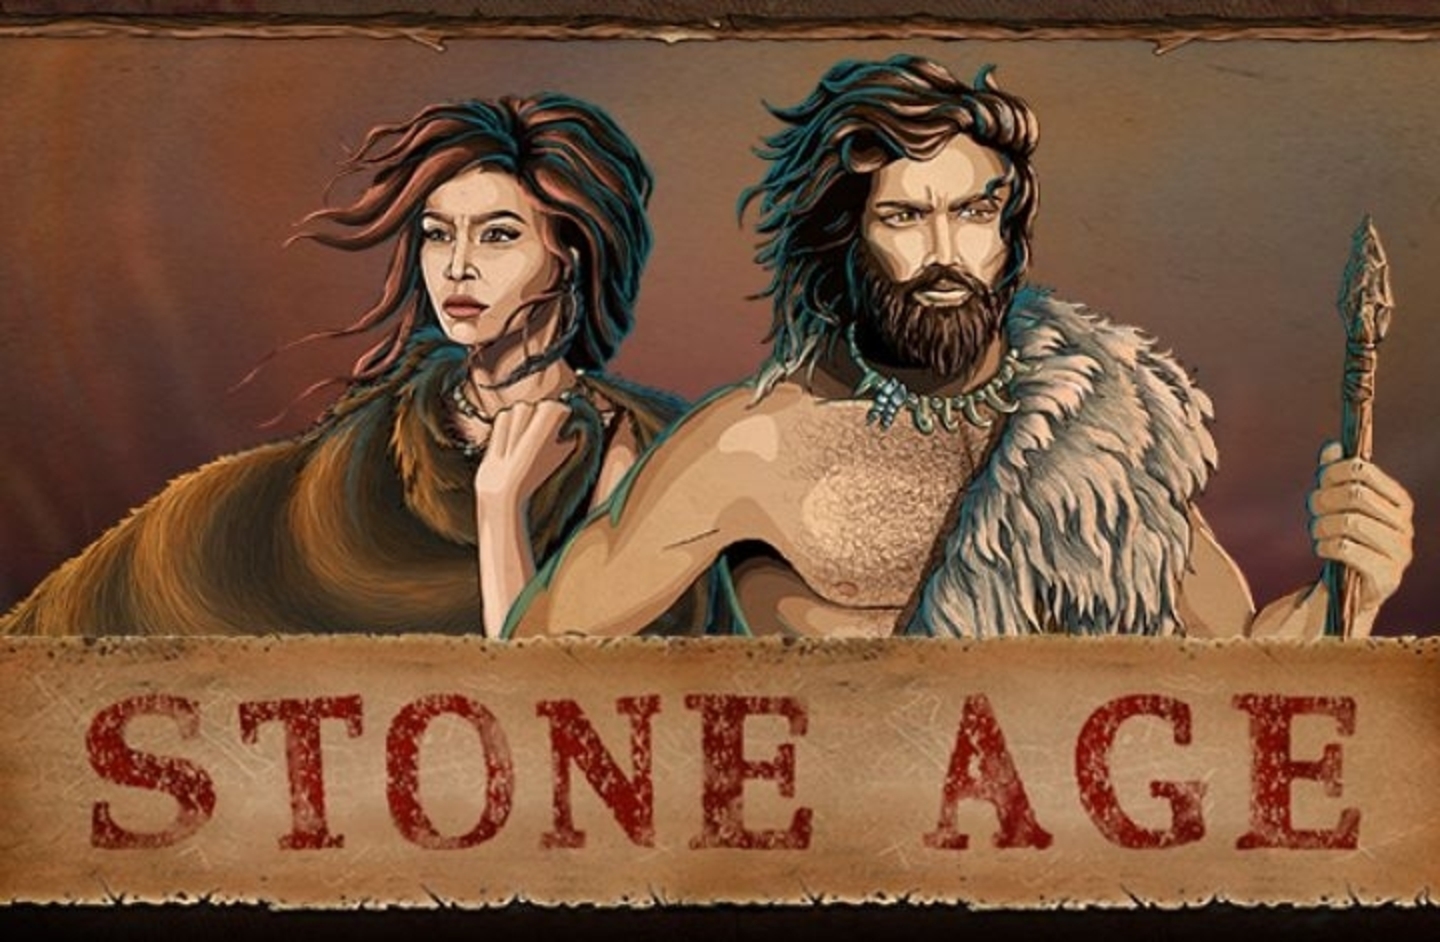 Stone Age demo